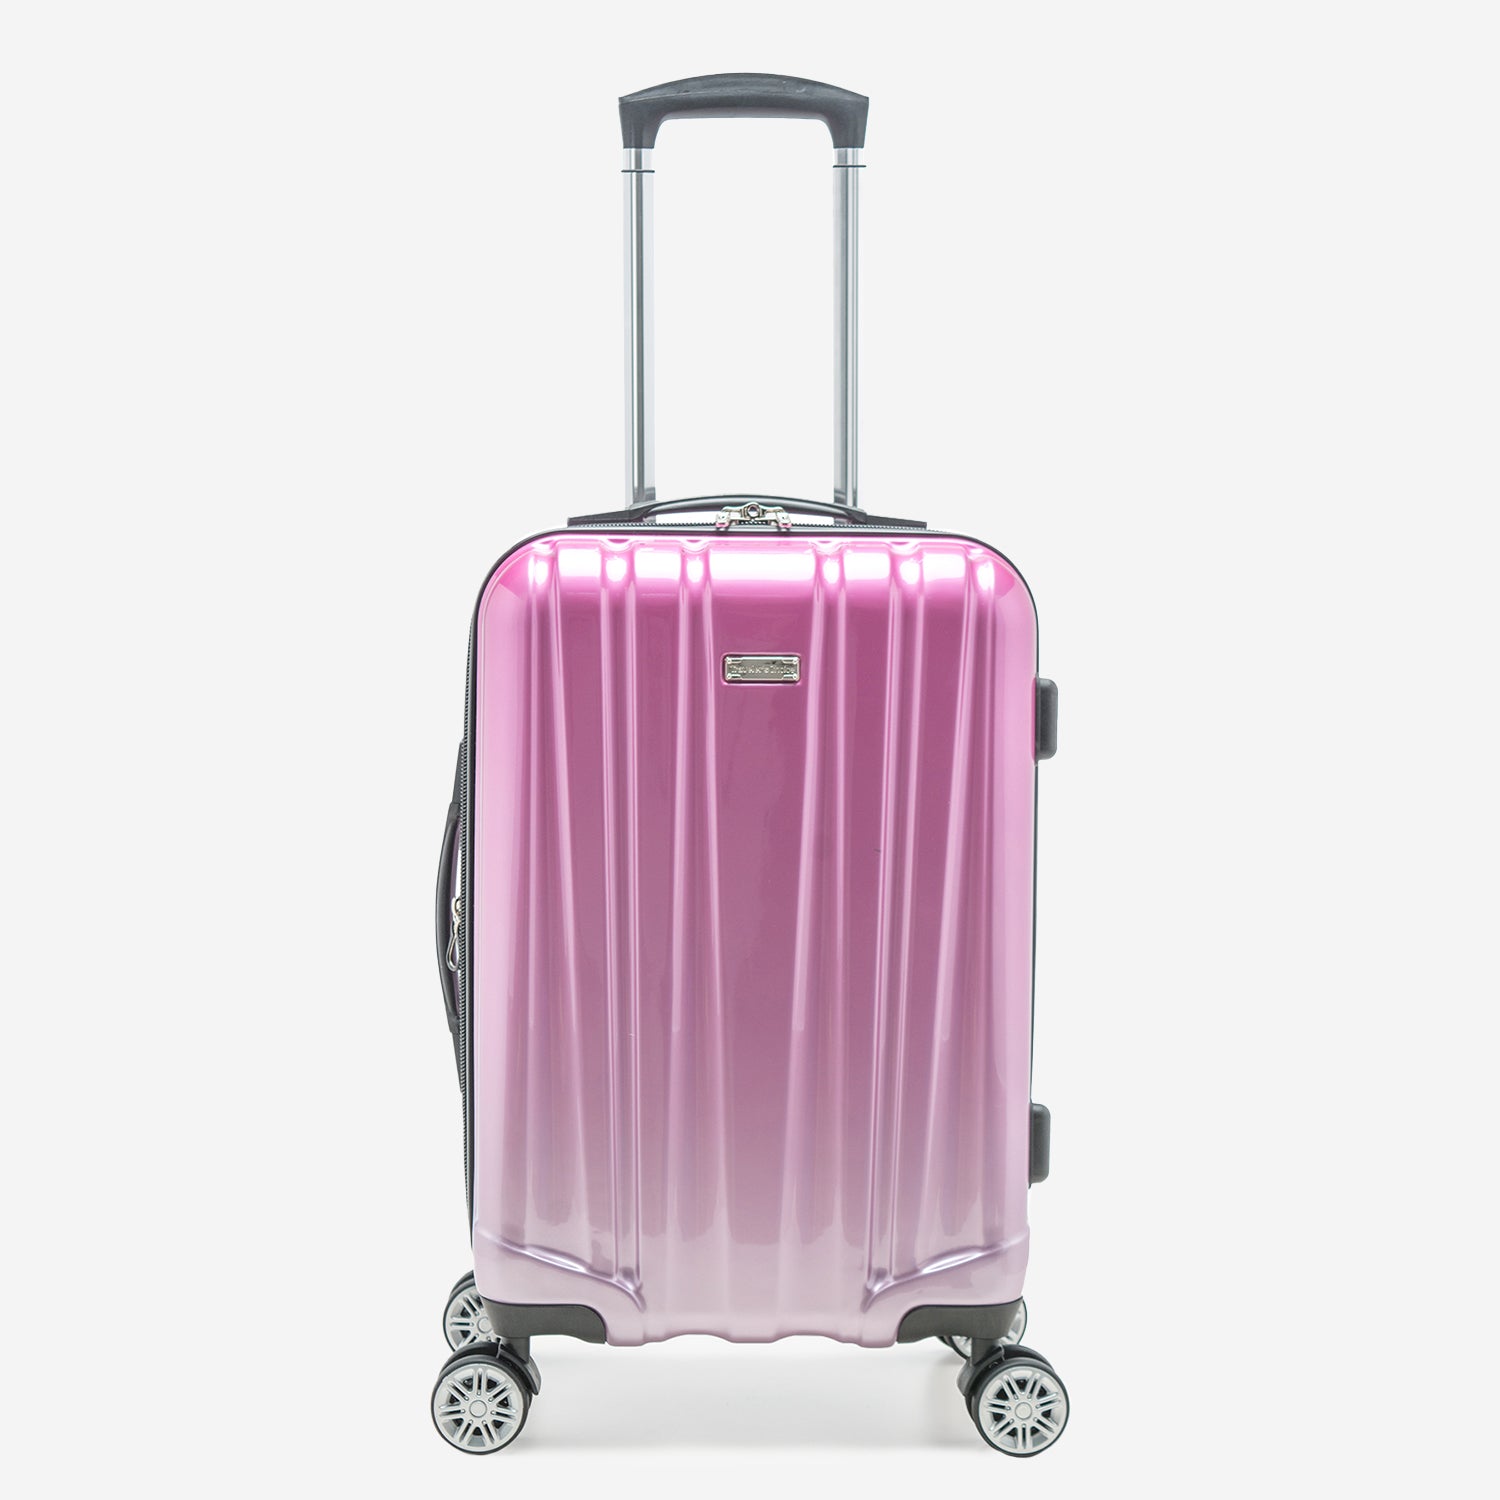 Buy Luggage & Suitcase Set Online – Traveler's Choice